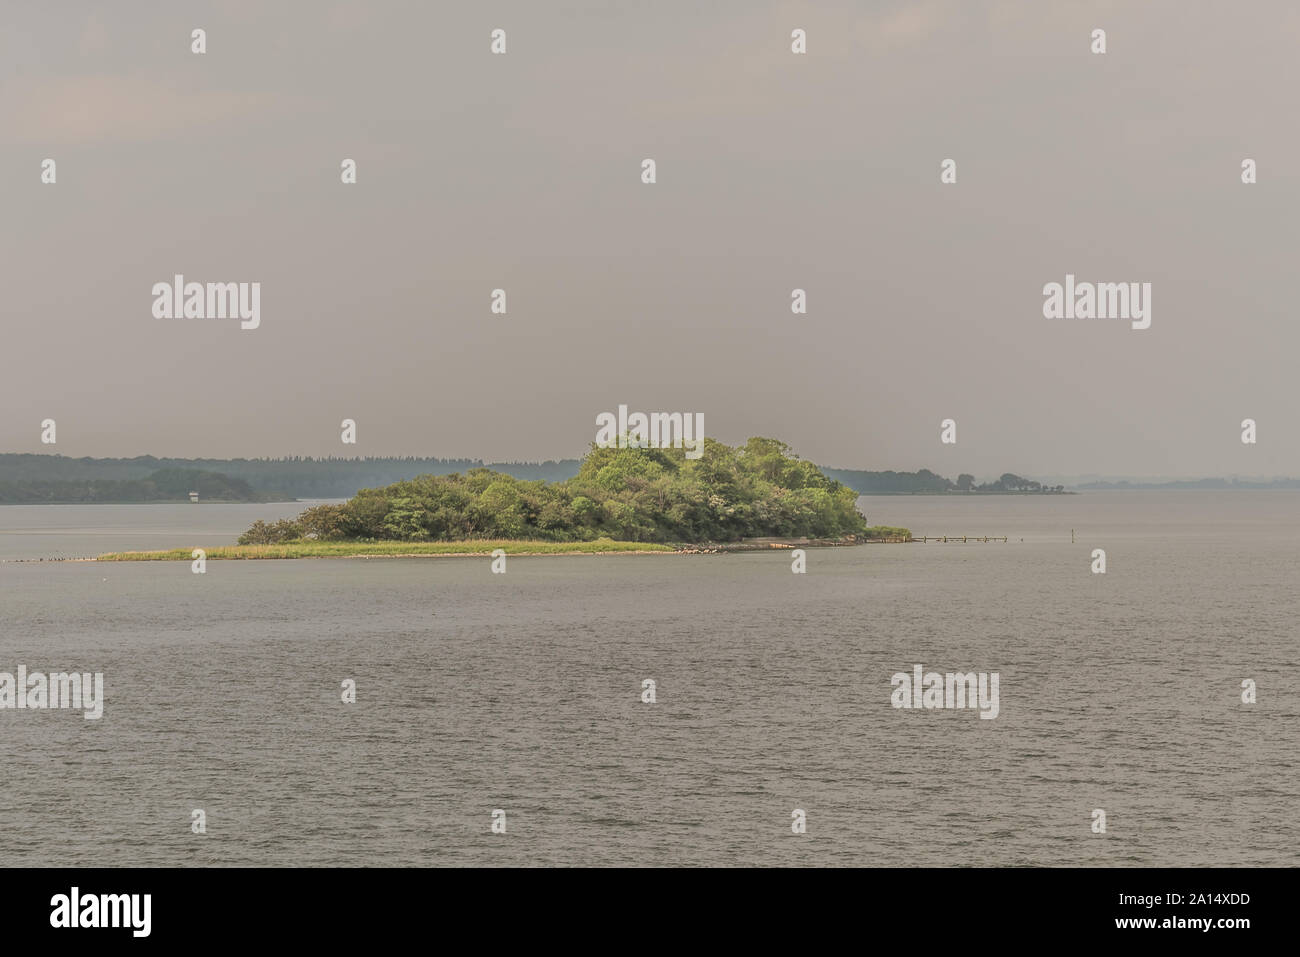 Une petite île avec des arbres verts et d'une jetée dans la mer près de Svendborg, Danemark, le 13 juillet 2019 Banque D'Images